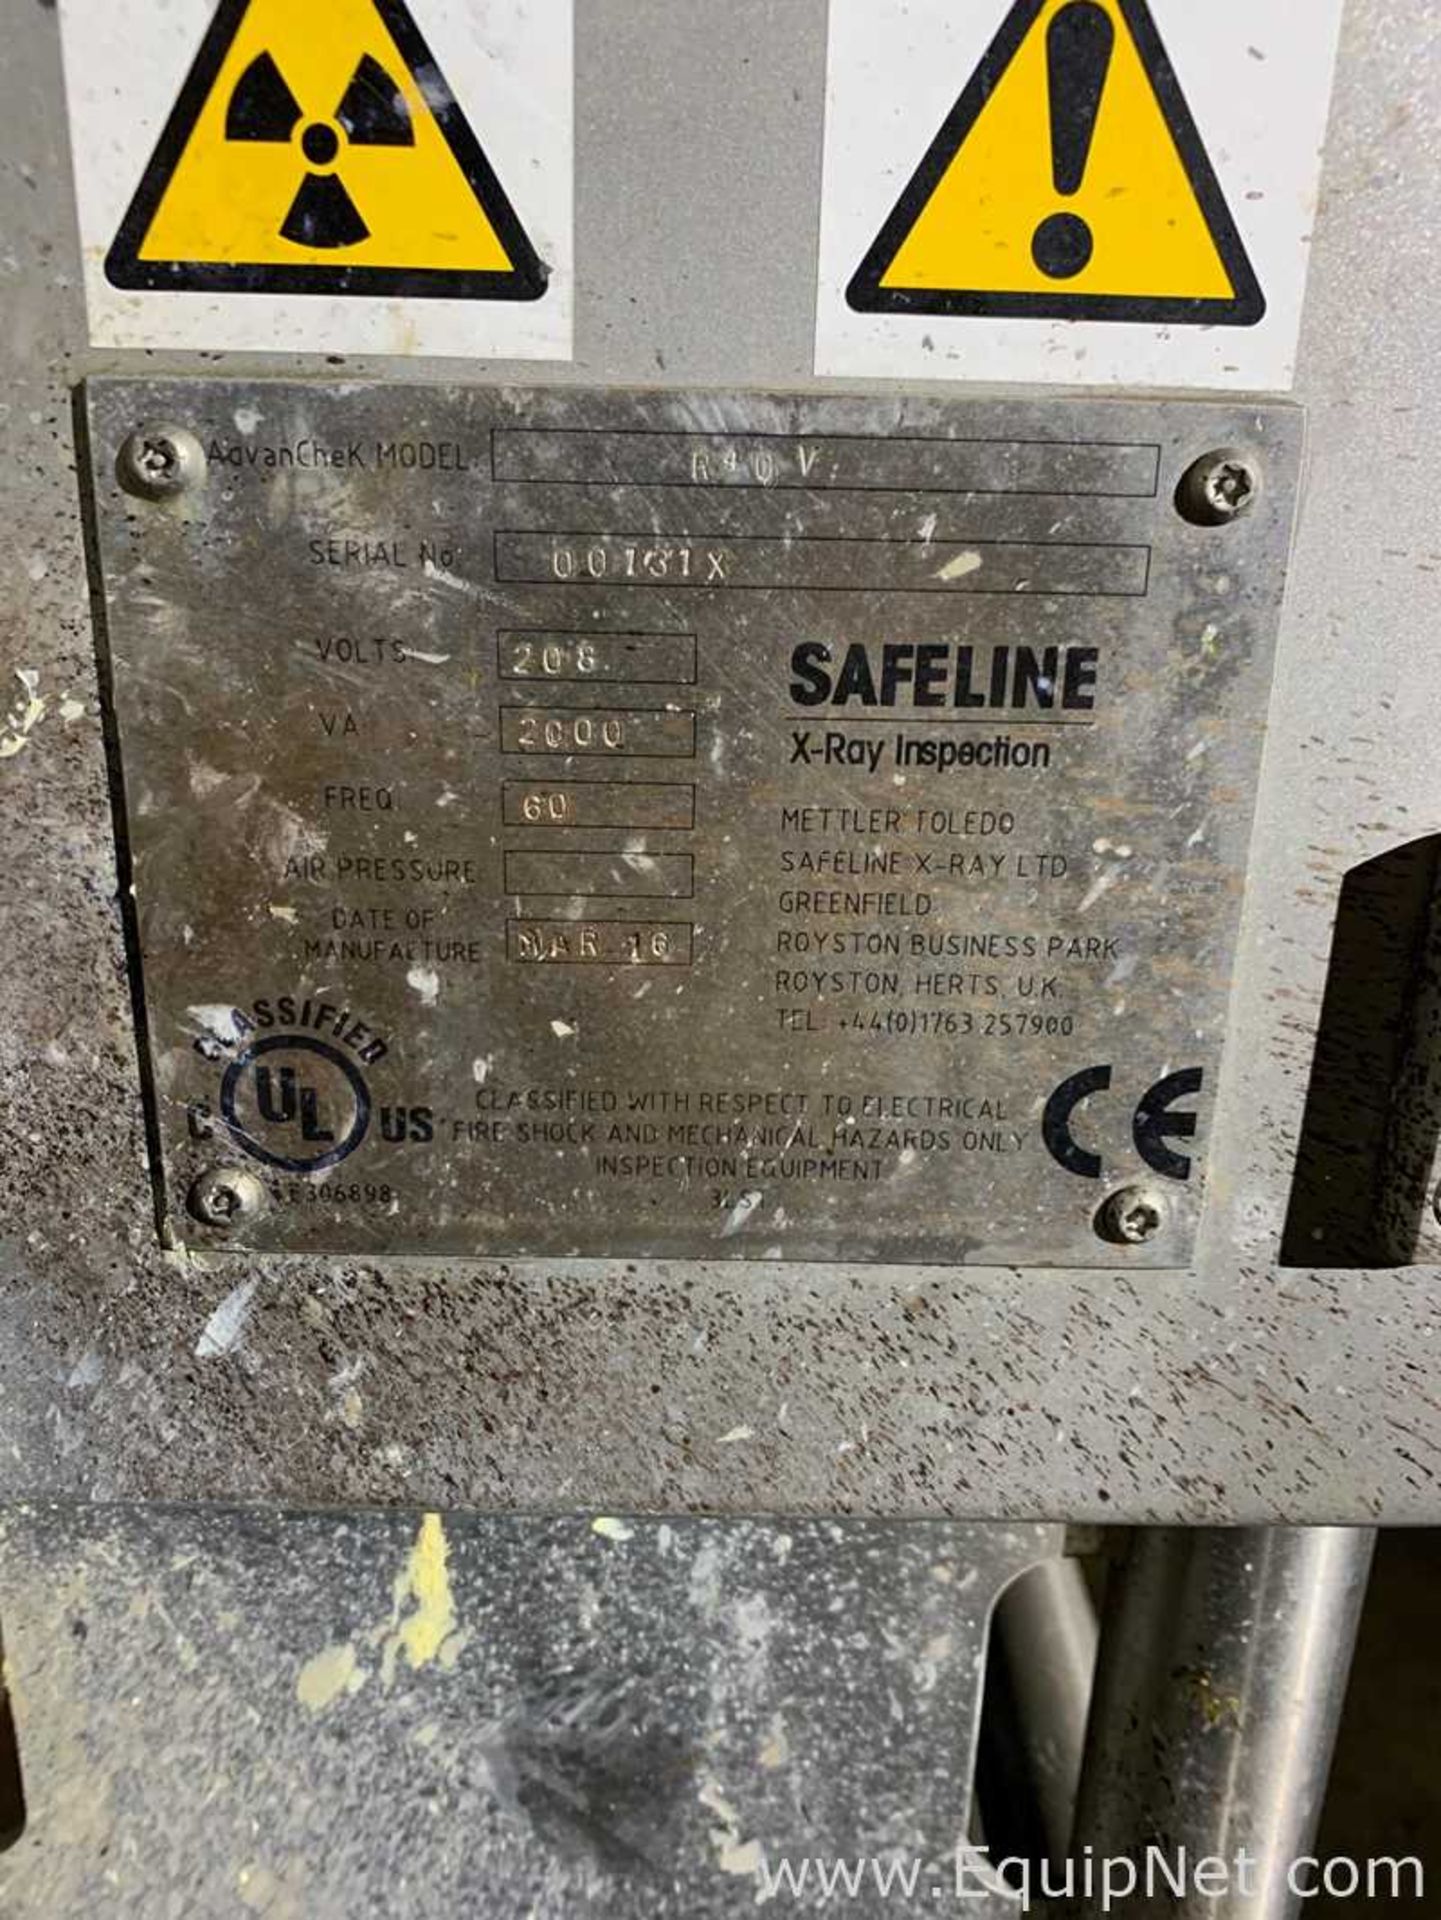 Safeline Mettler Toledo R40V X-Ray Inspection - Image 2 of 2